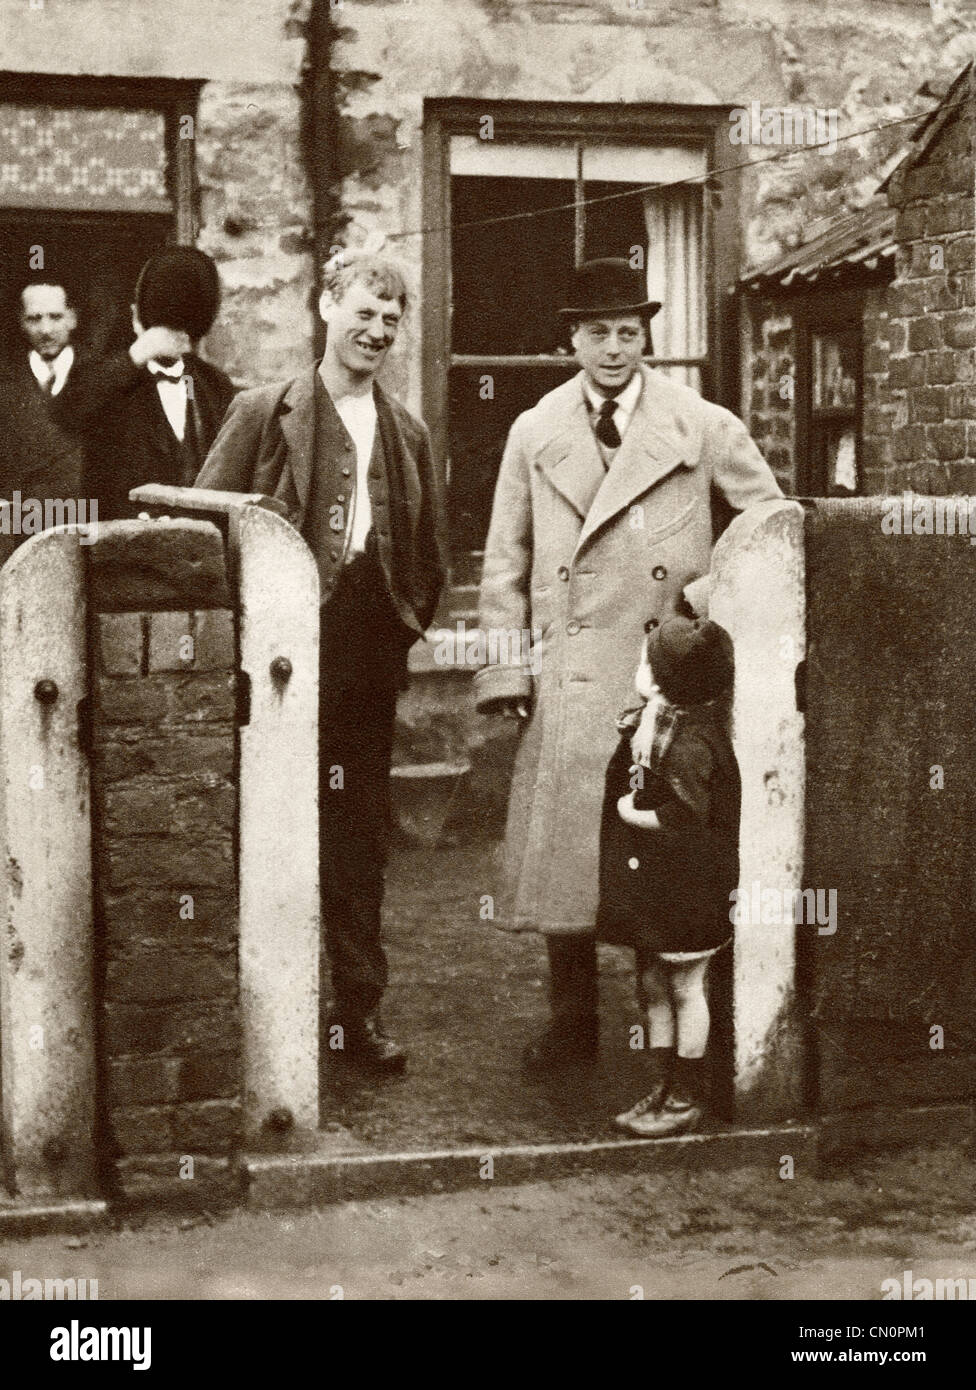 Le Prince de Galles, futur roi Édouard VIII la visite d'une maison de mineur et de la famille dans la région de Durham en 1929. Banque D'Images